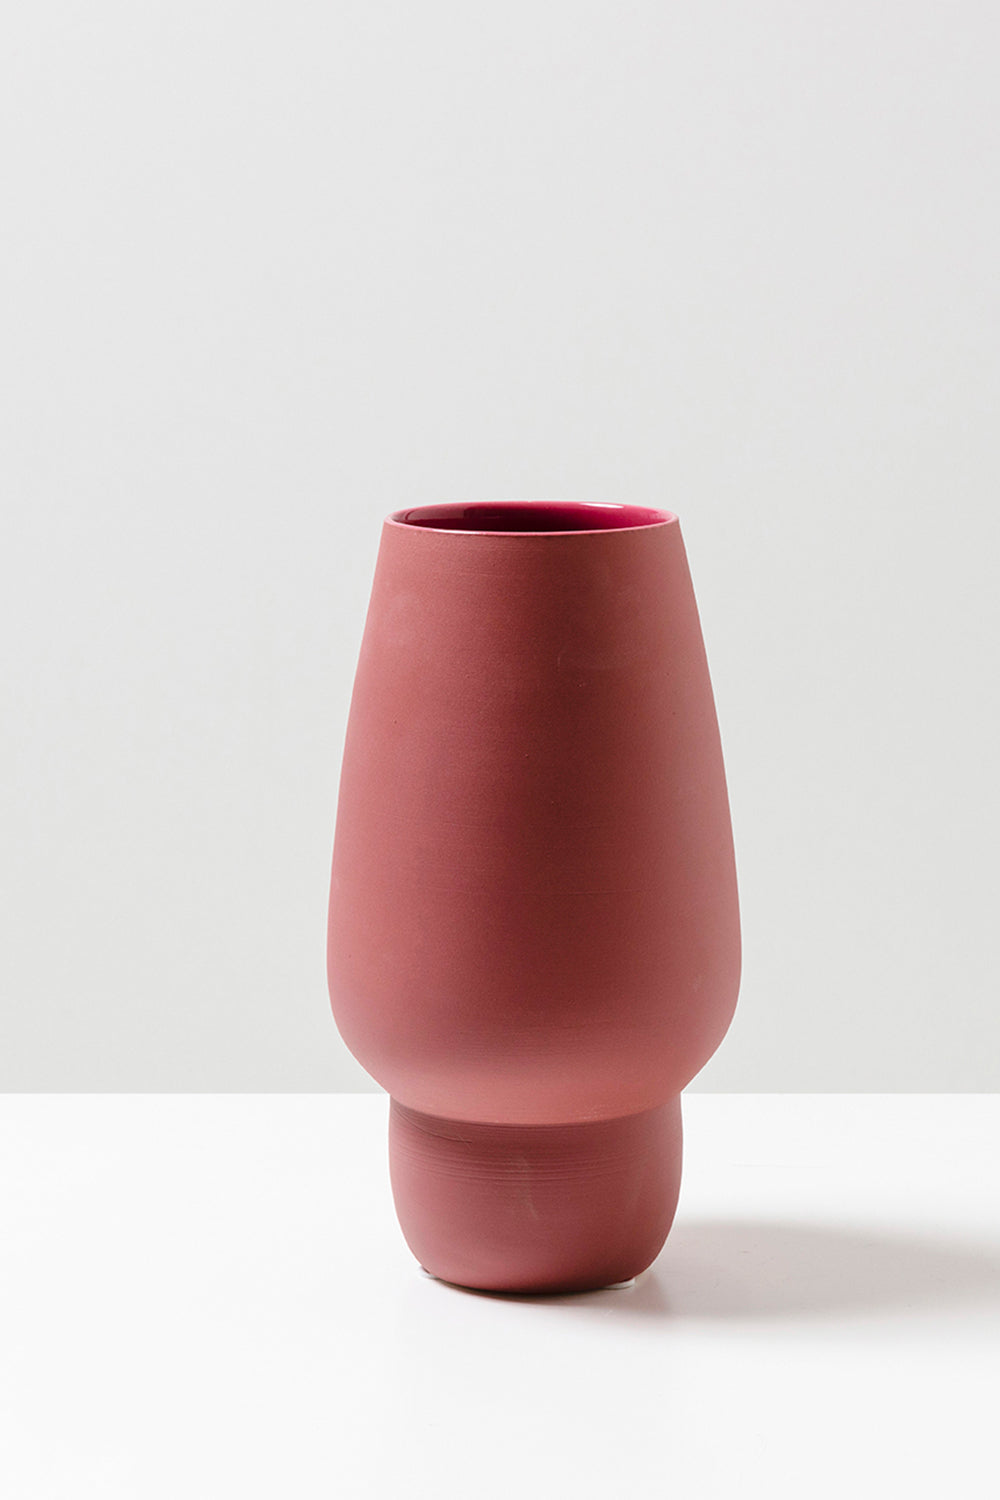 KAS - Biscayne Vase - Ceder